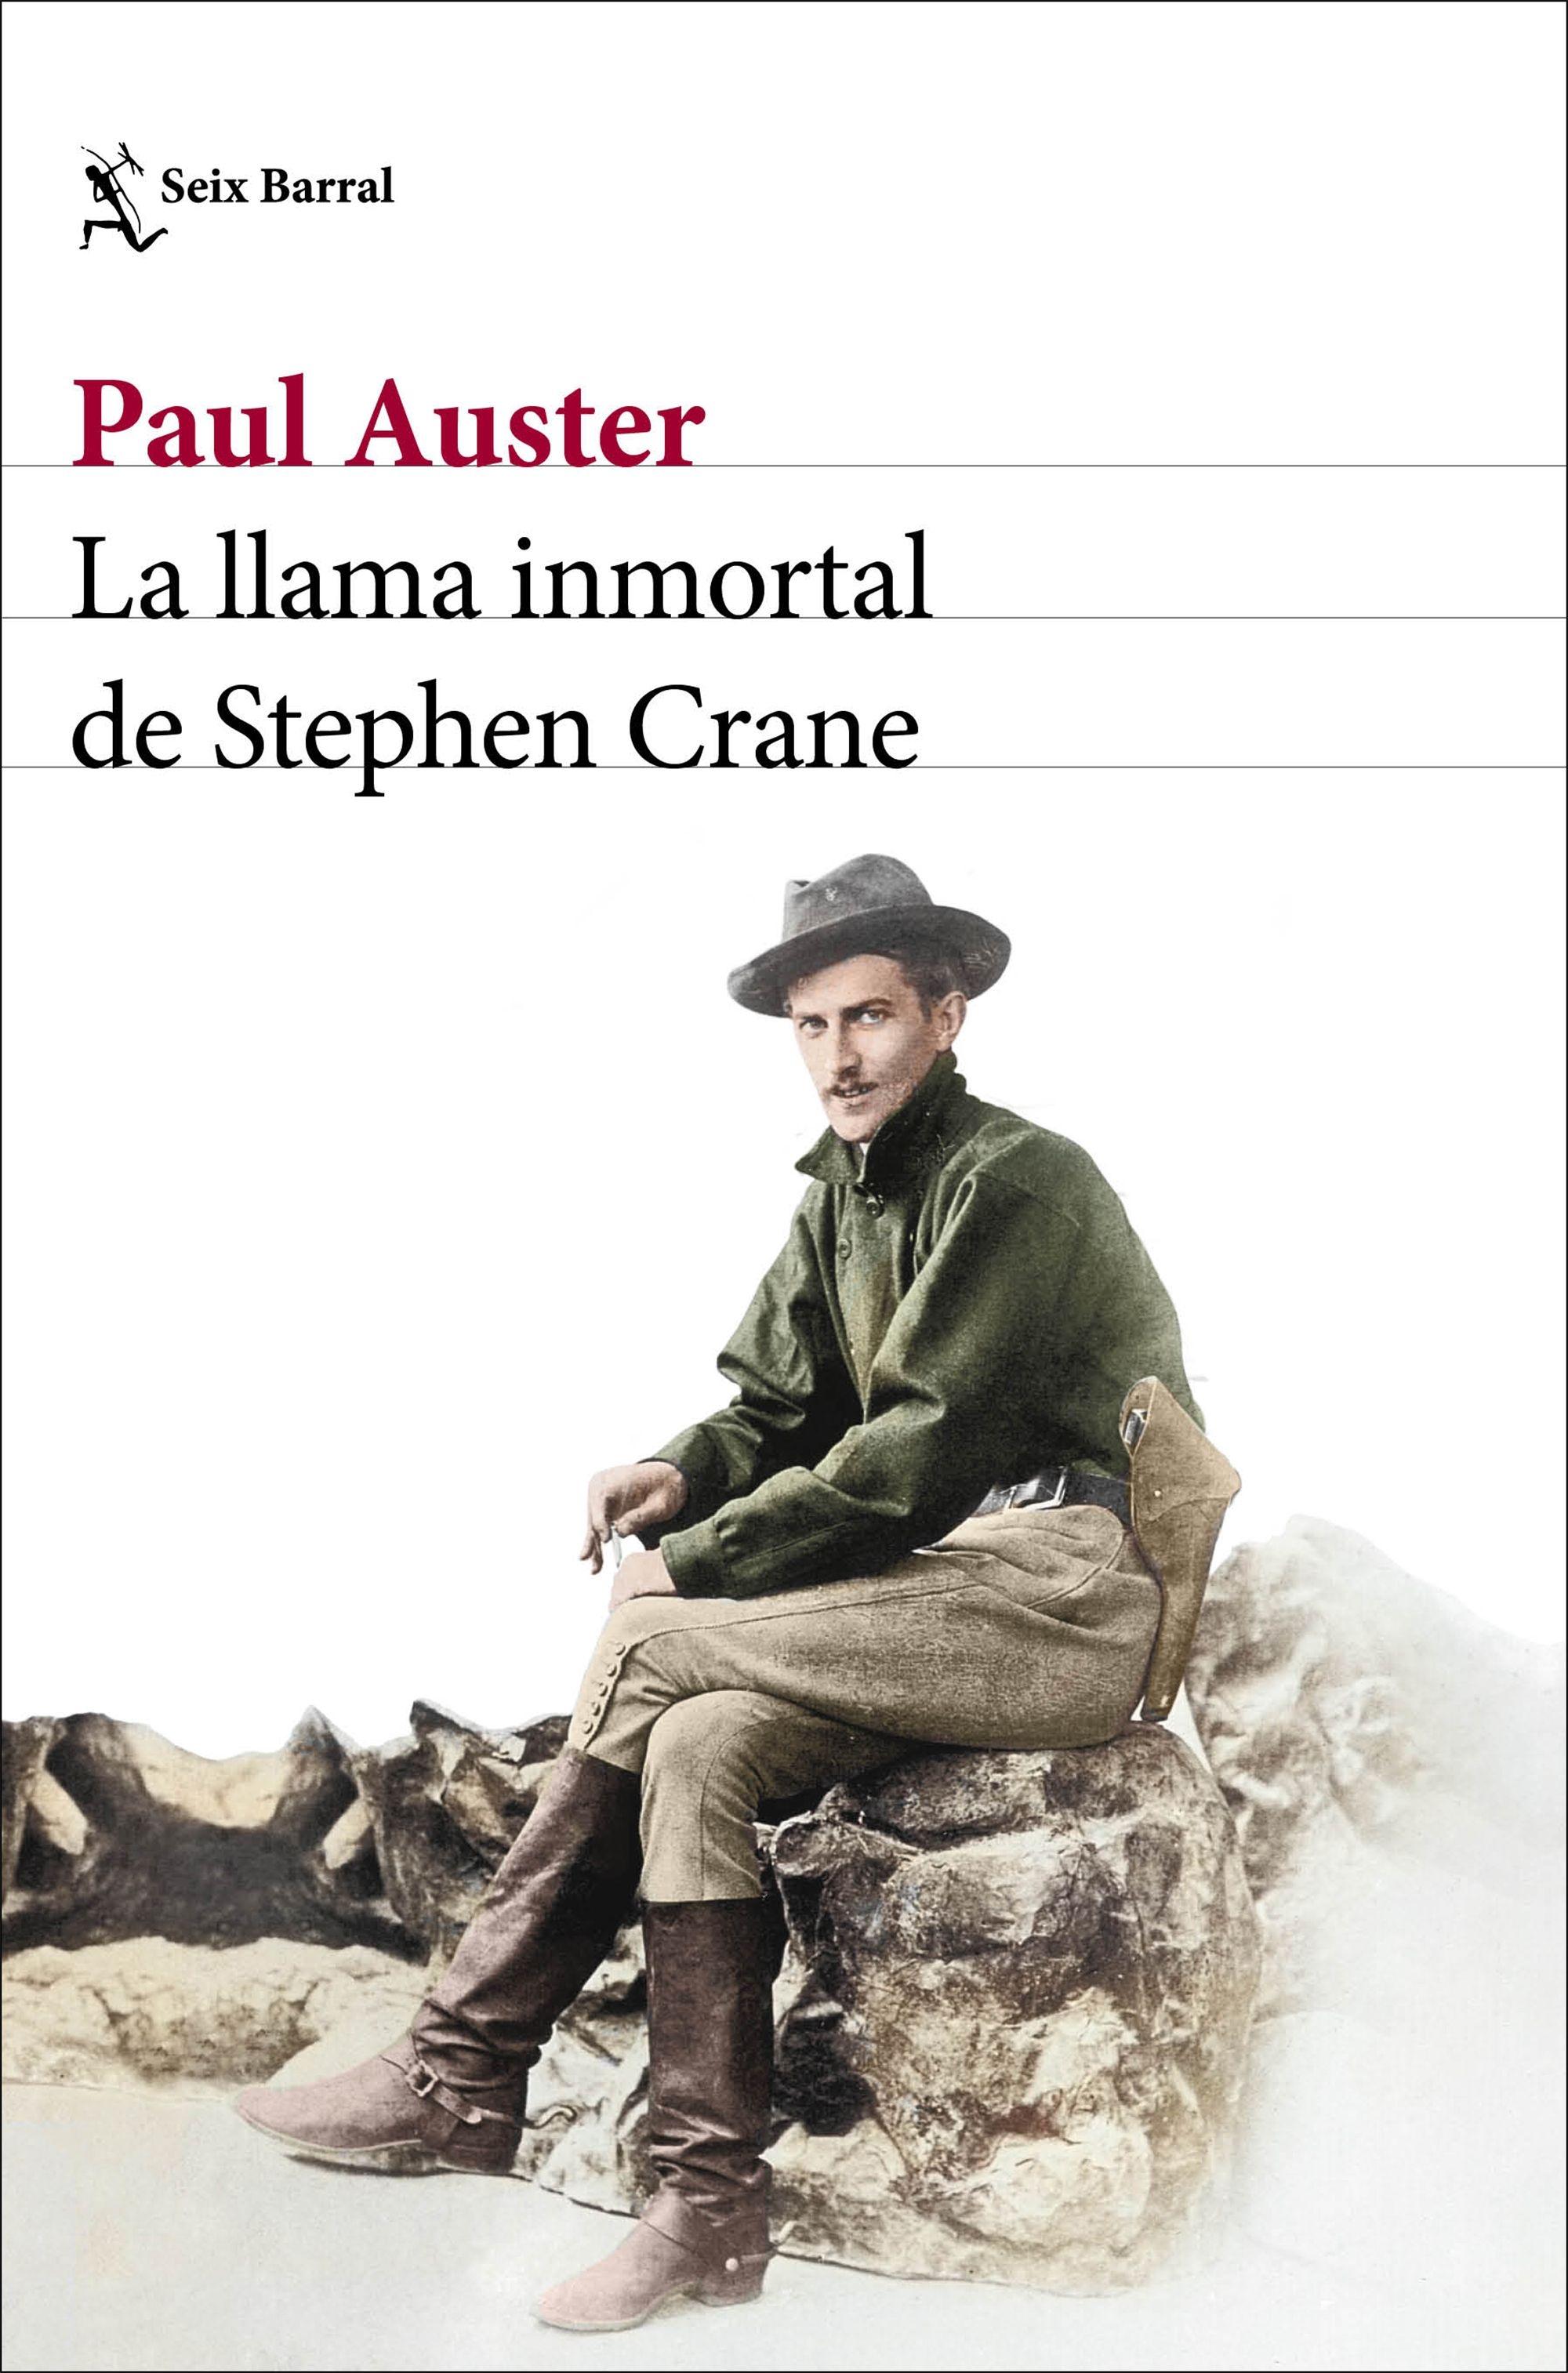 Llama inmortal de Stephen Crane, La